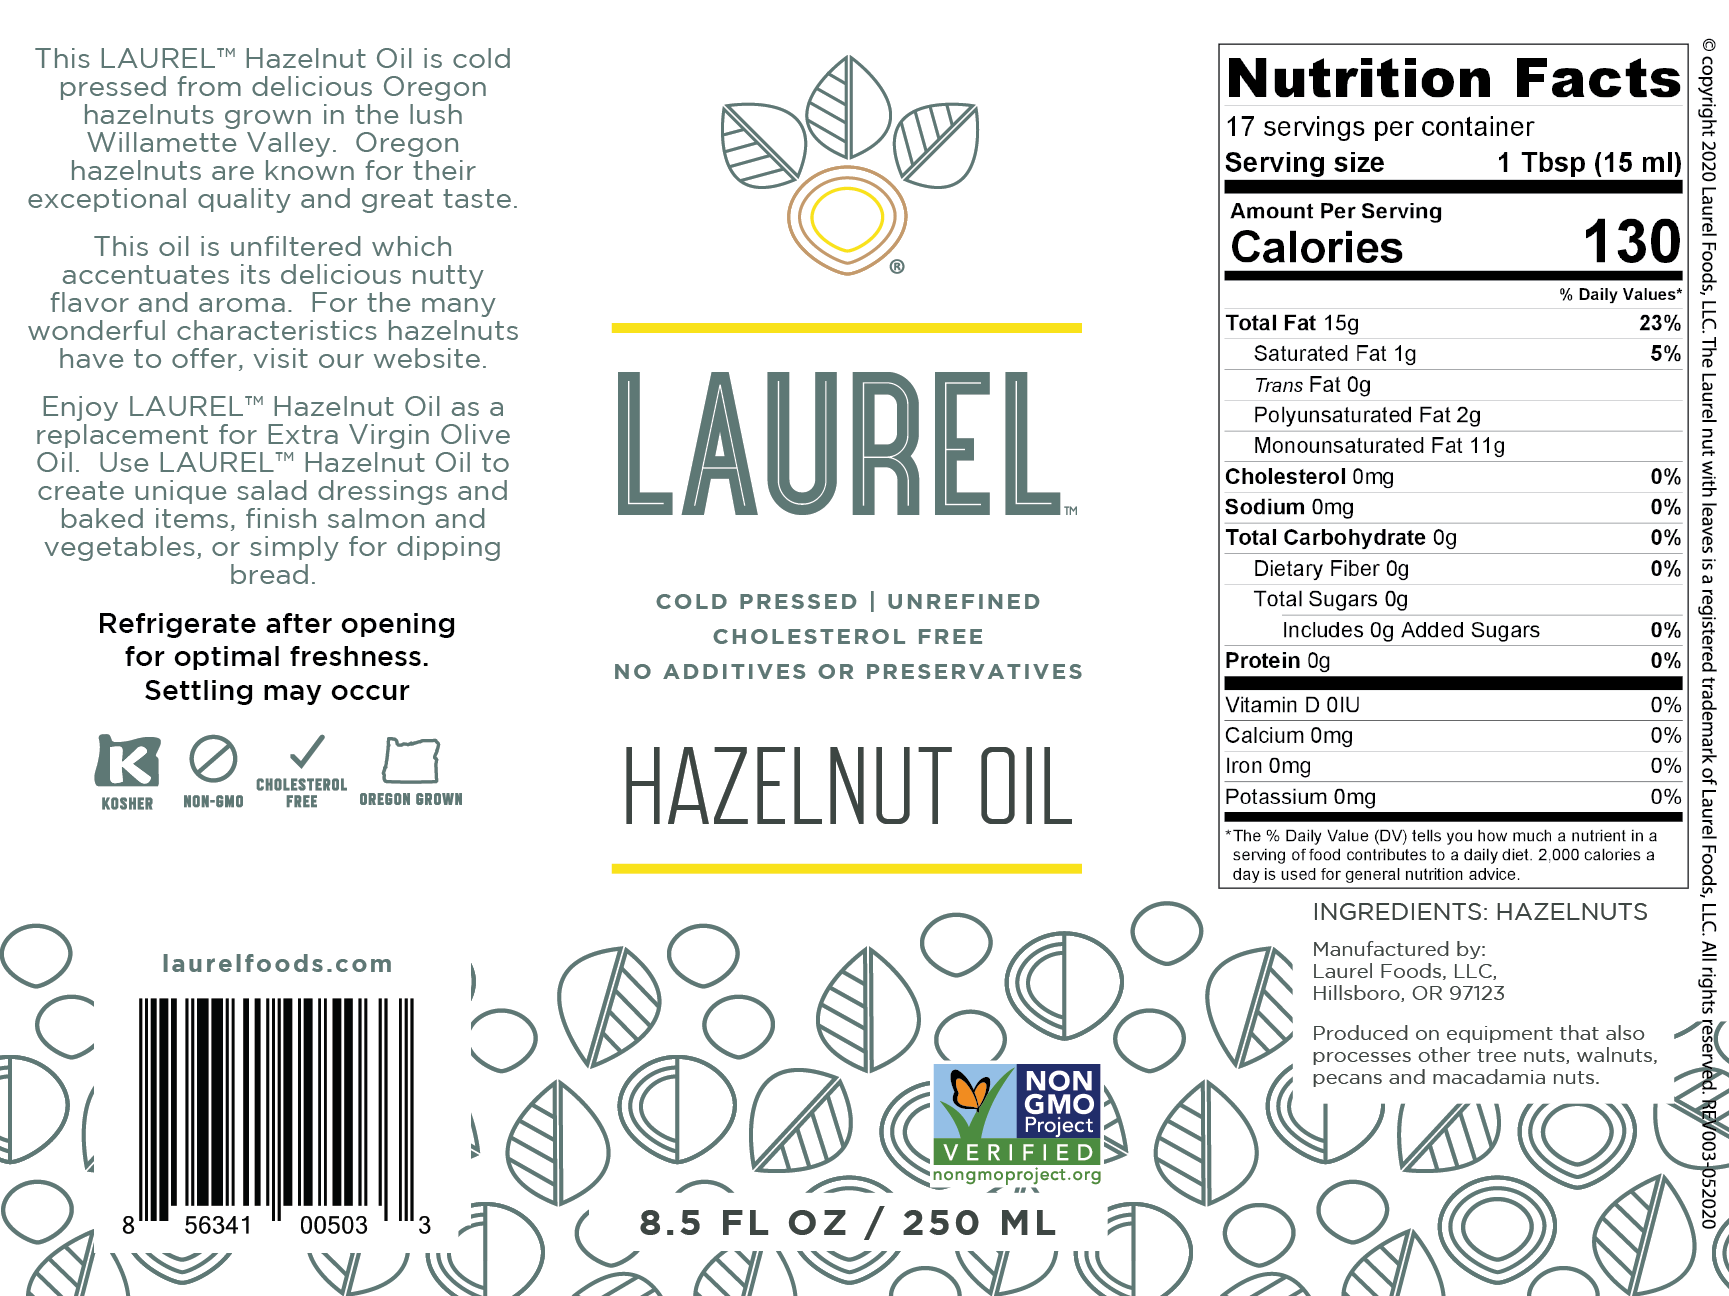 Hazelnut Kernels, VARIETY PACK, 1.6 oz Grab N Go pouch 3 PACK — Laurel Foods